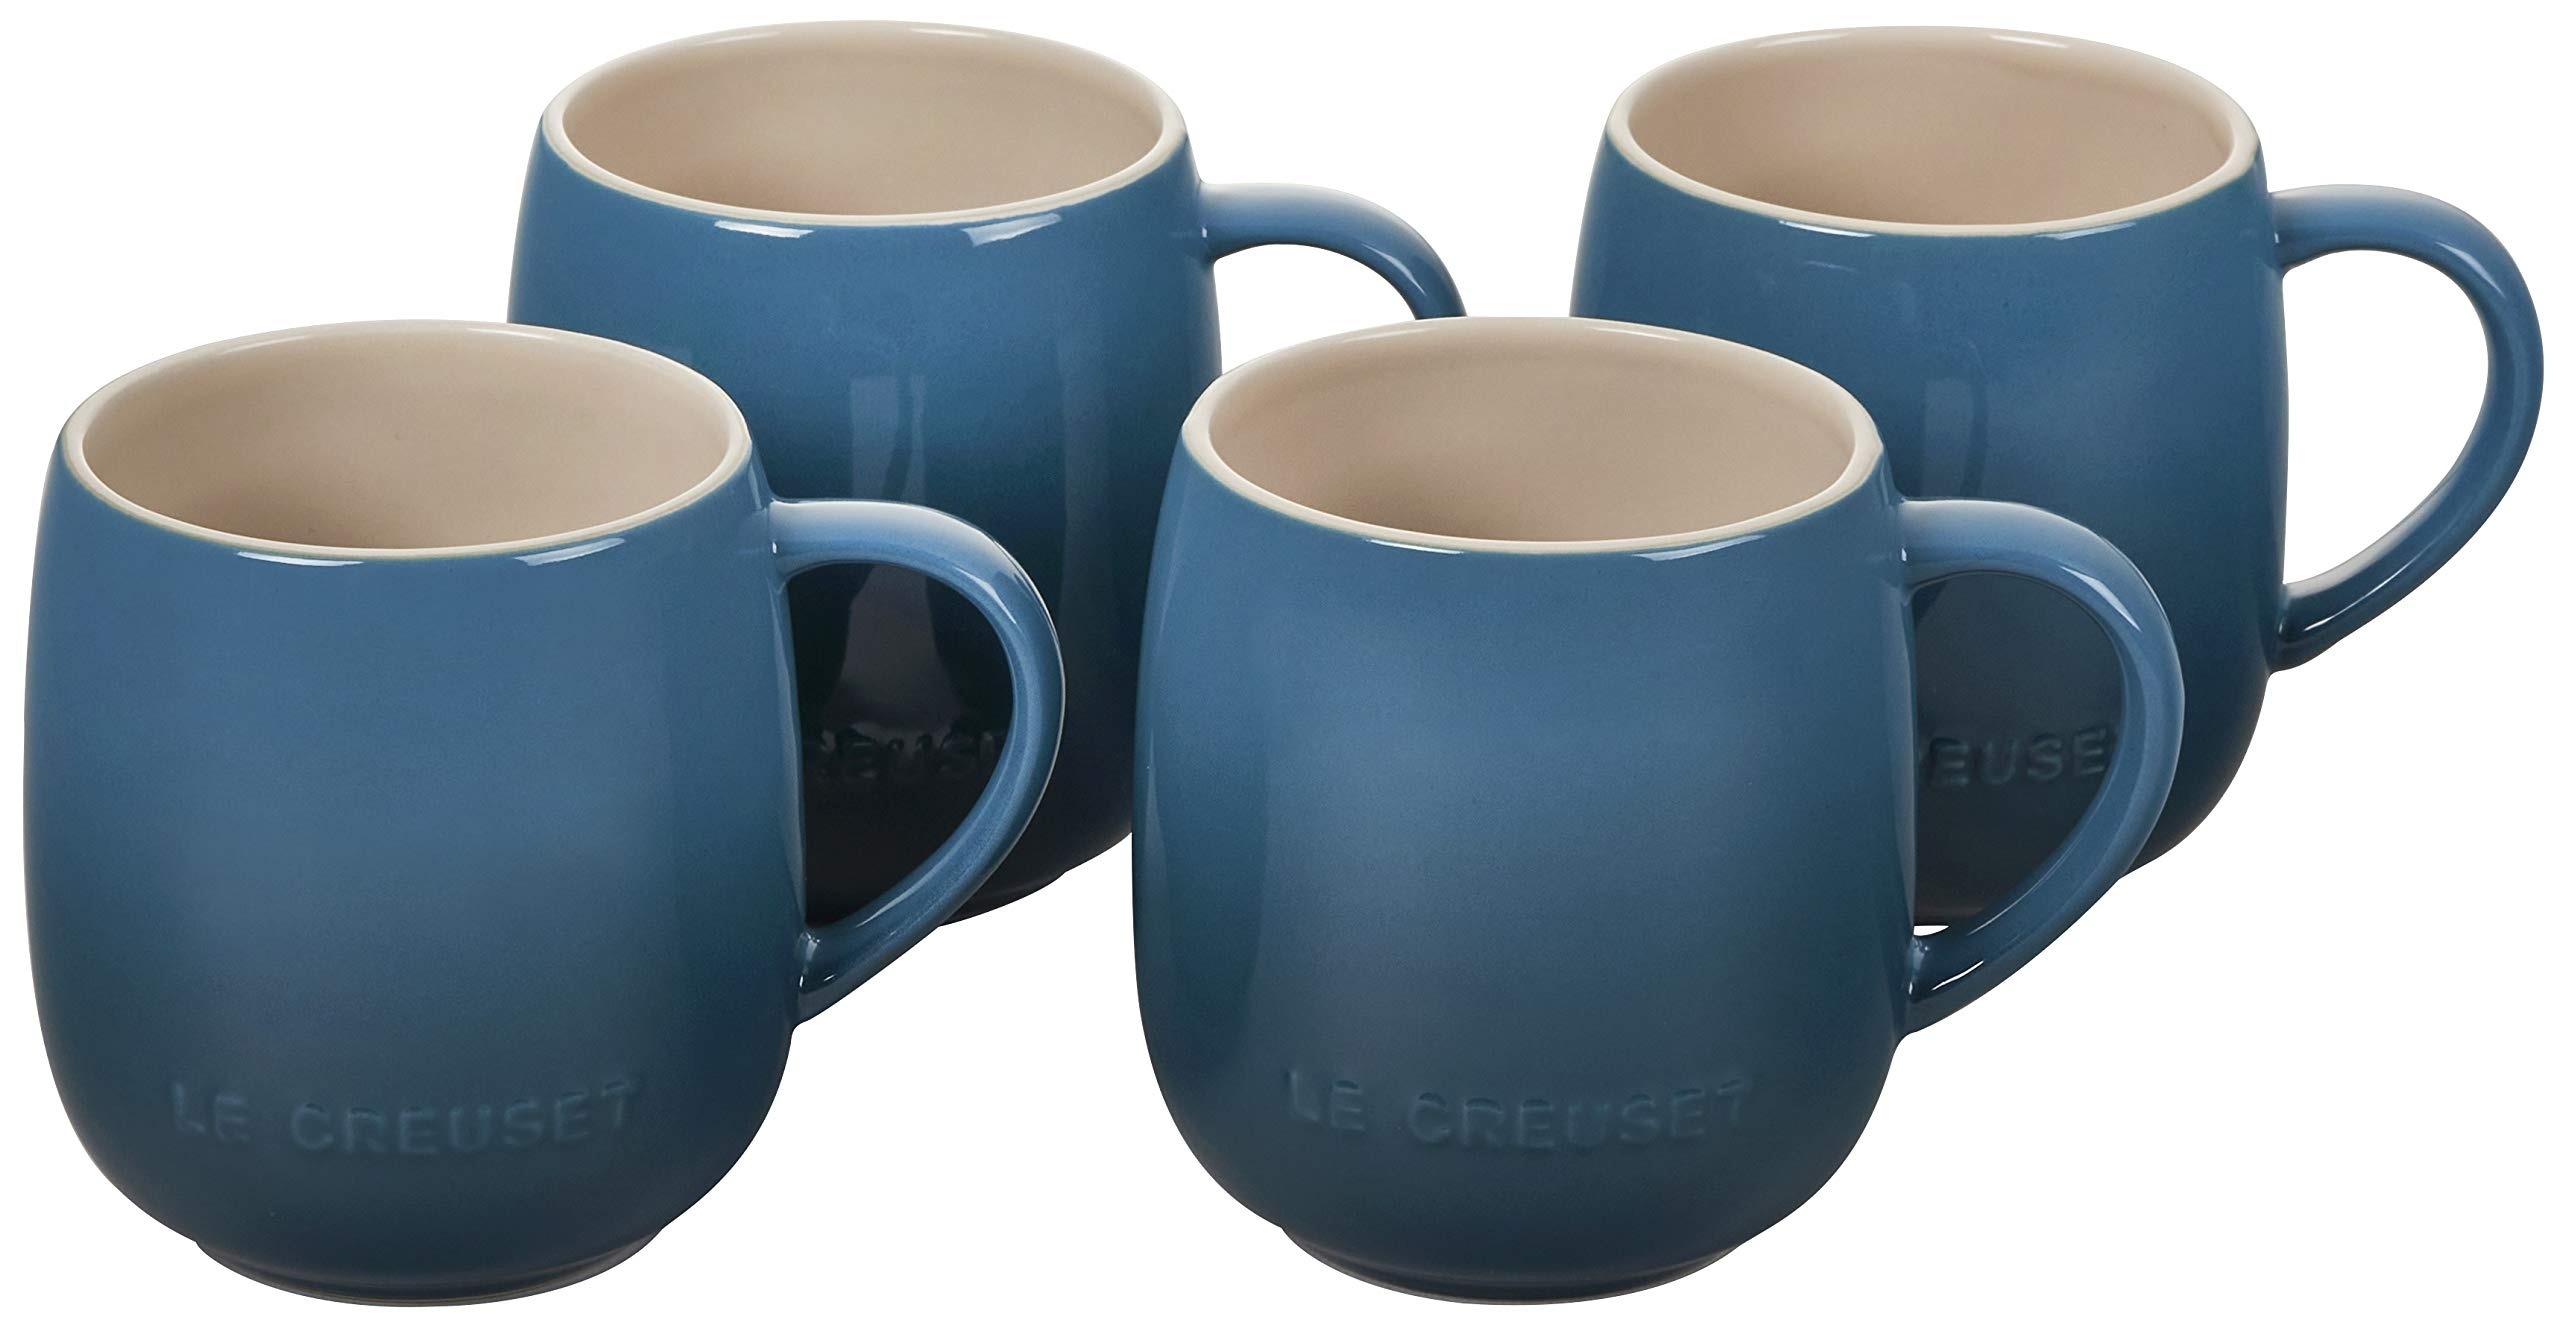 a set of four blue mugs